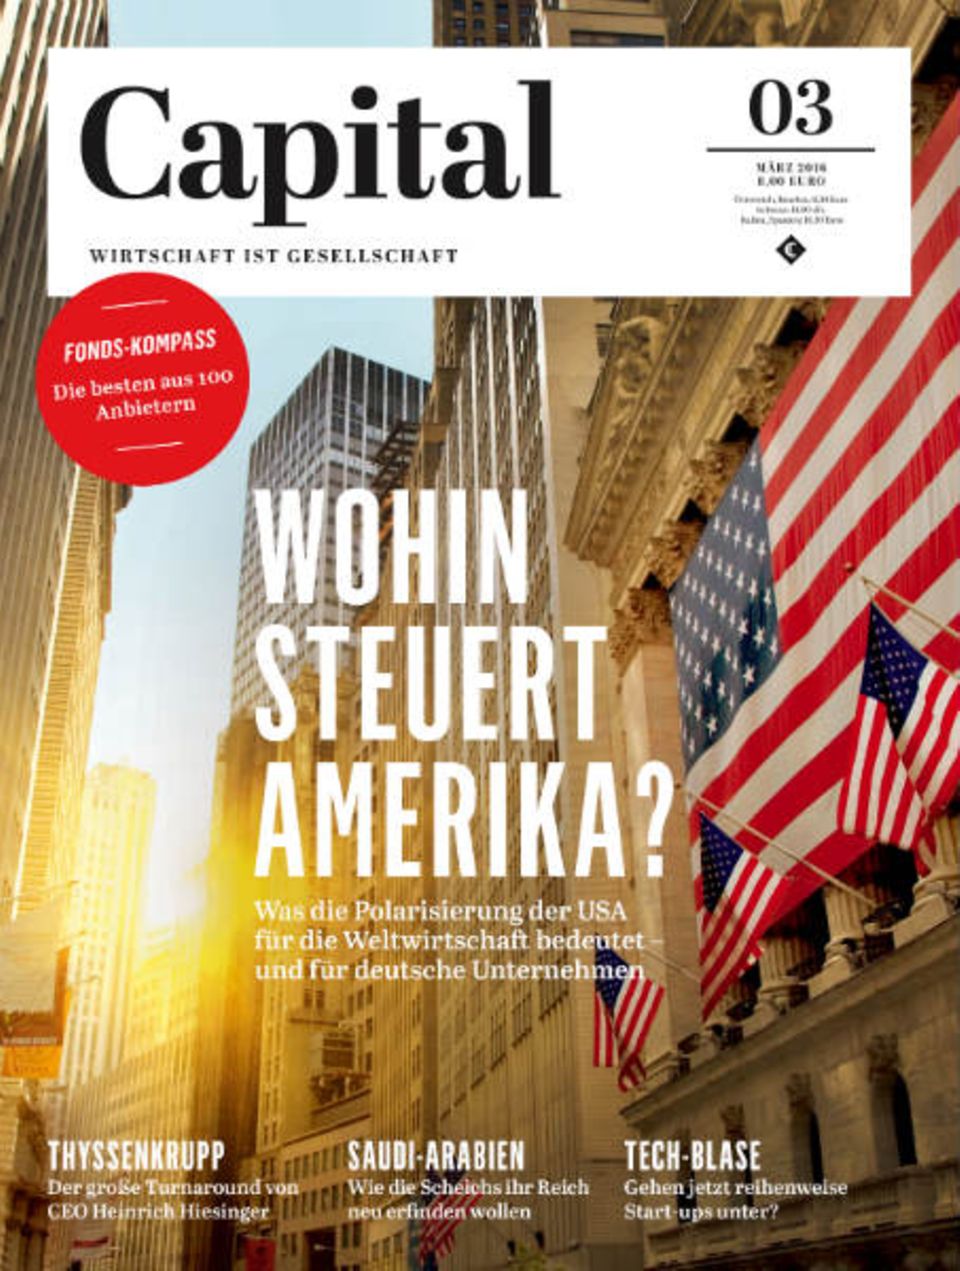 Die neue Capital erscheint am 18. Februar